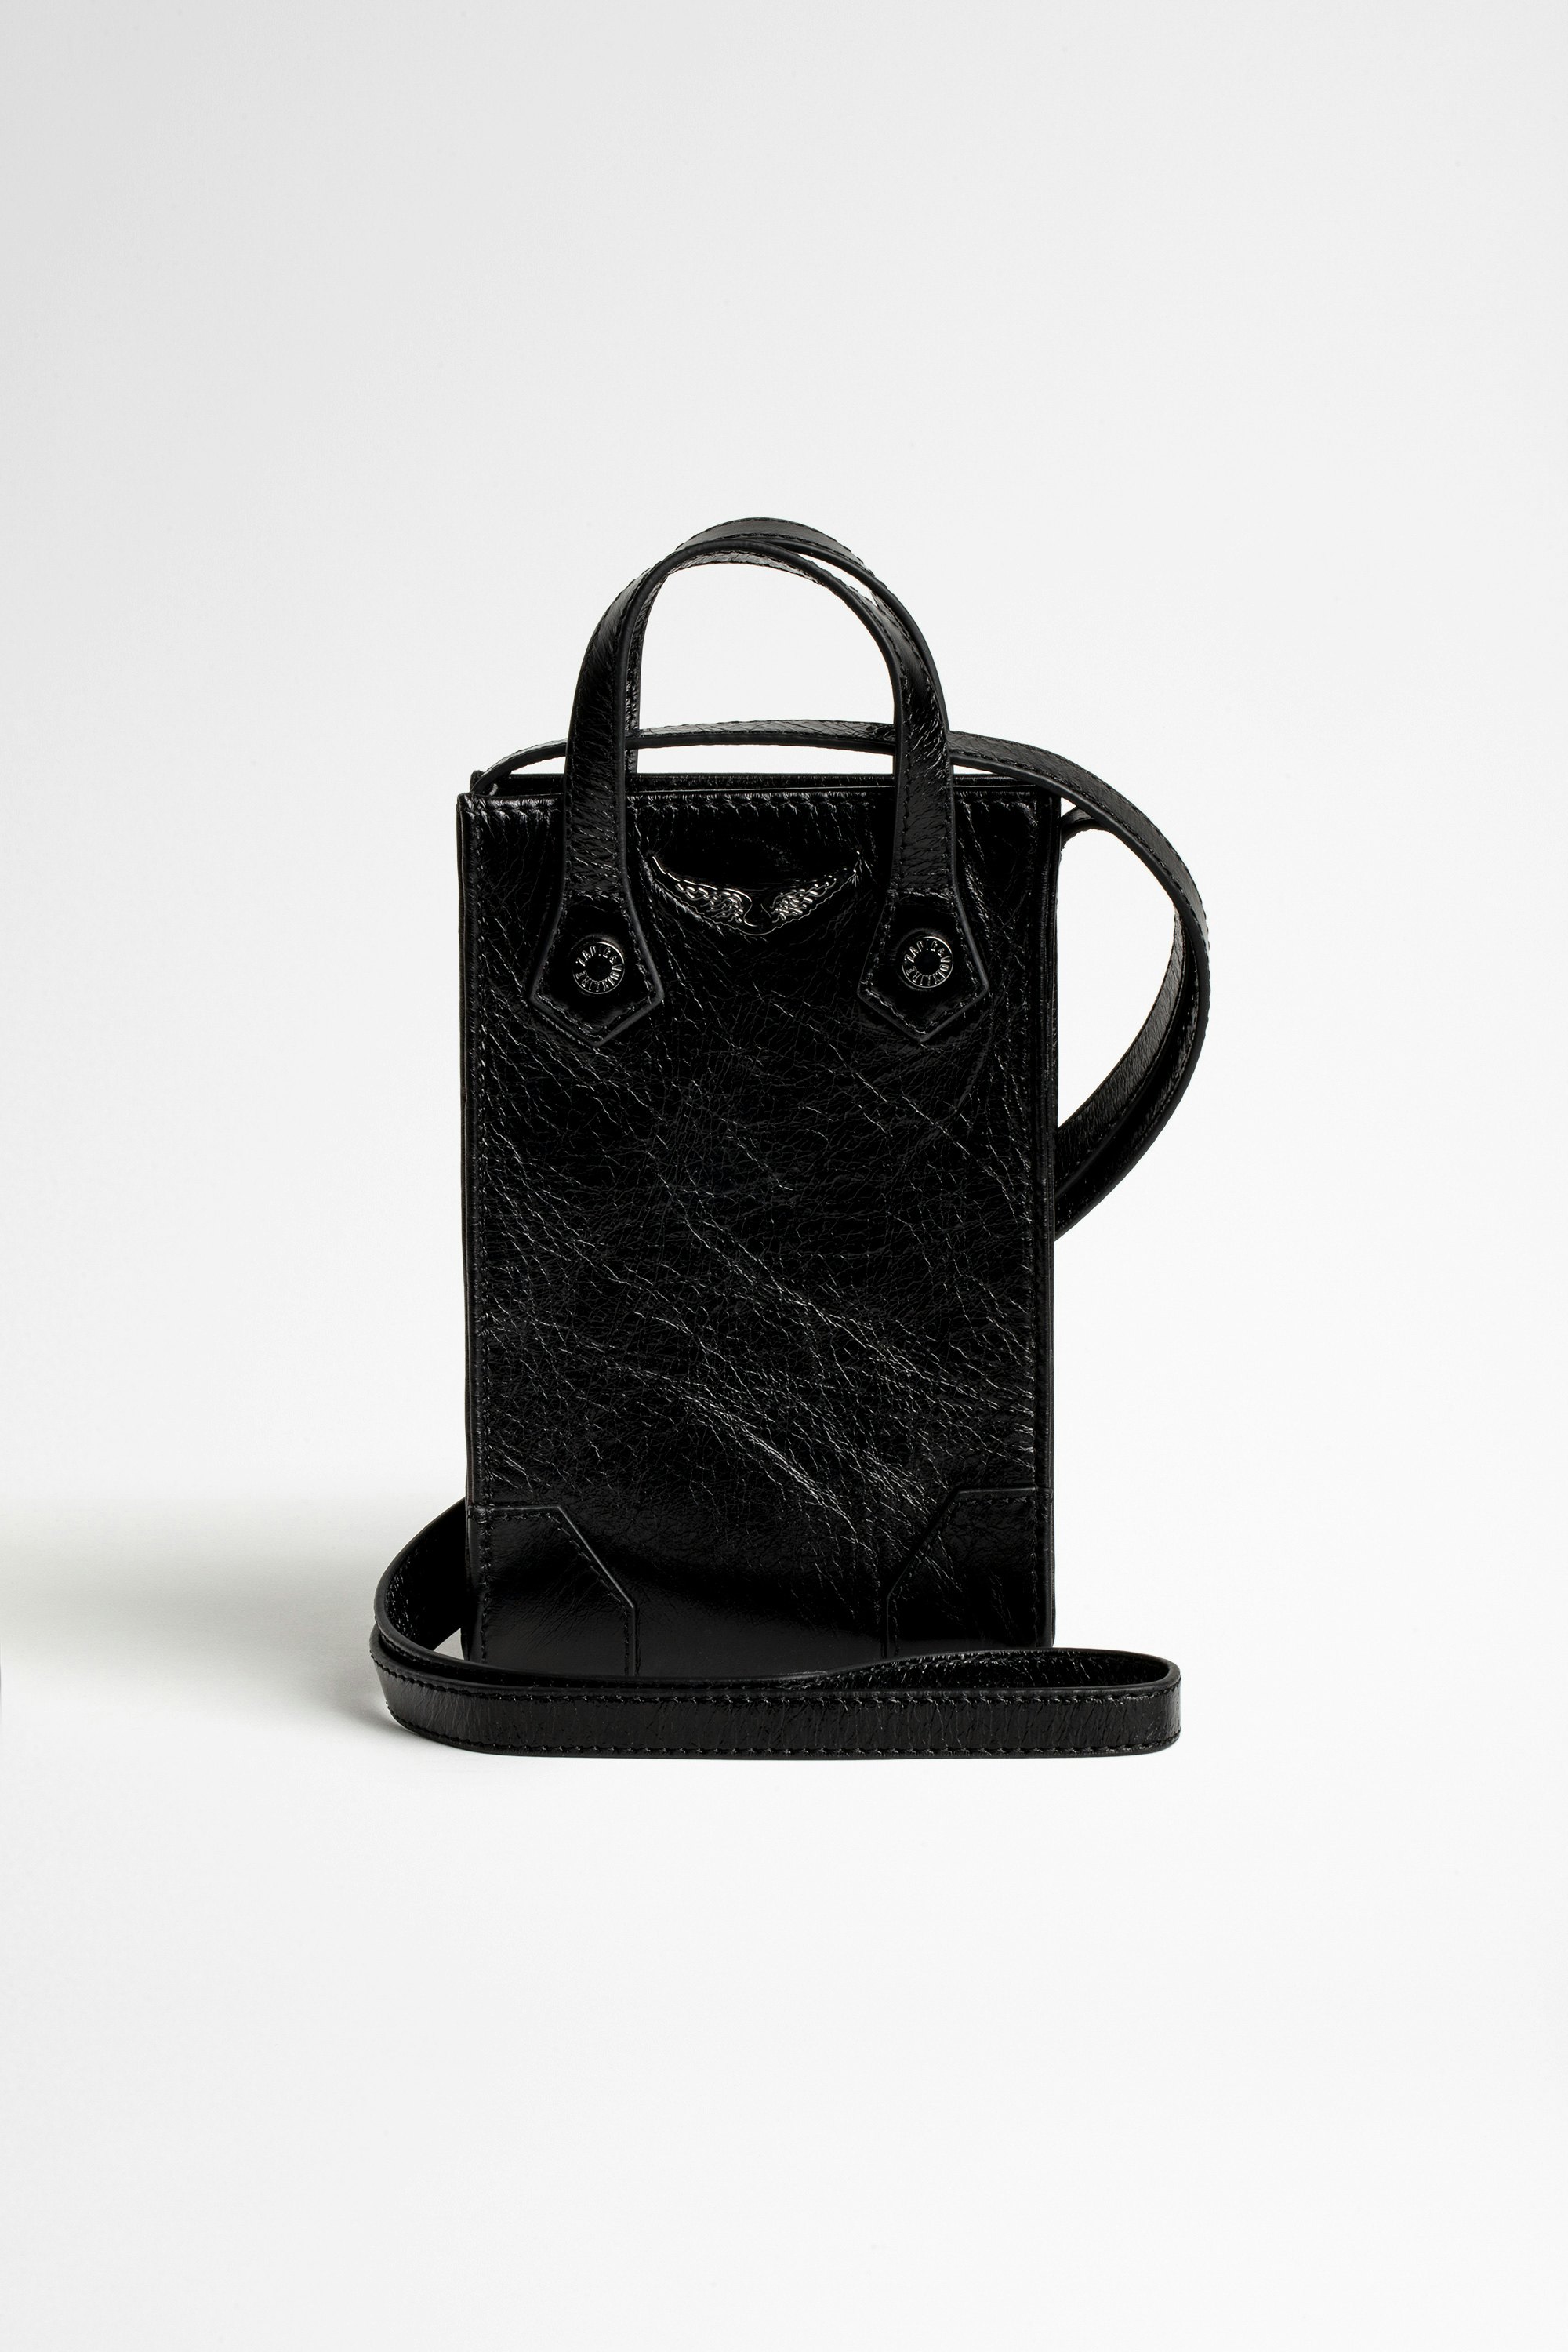 Vintage Sunny #2 Phone Pouch Black leather smartphone shoulder bag.